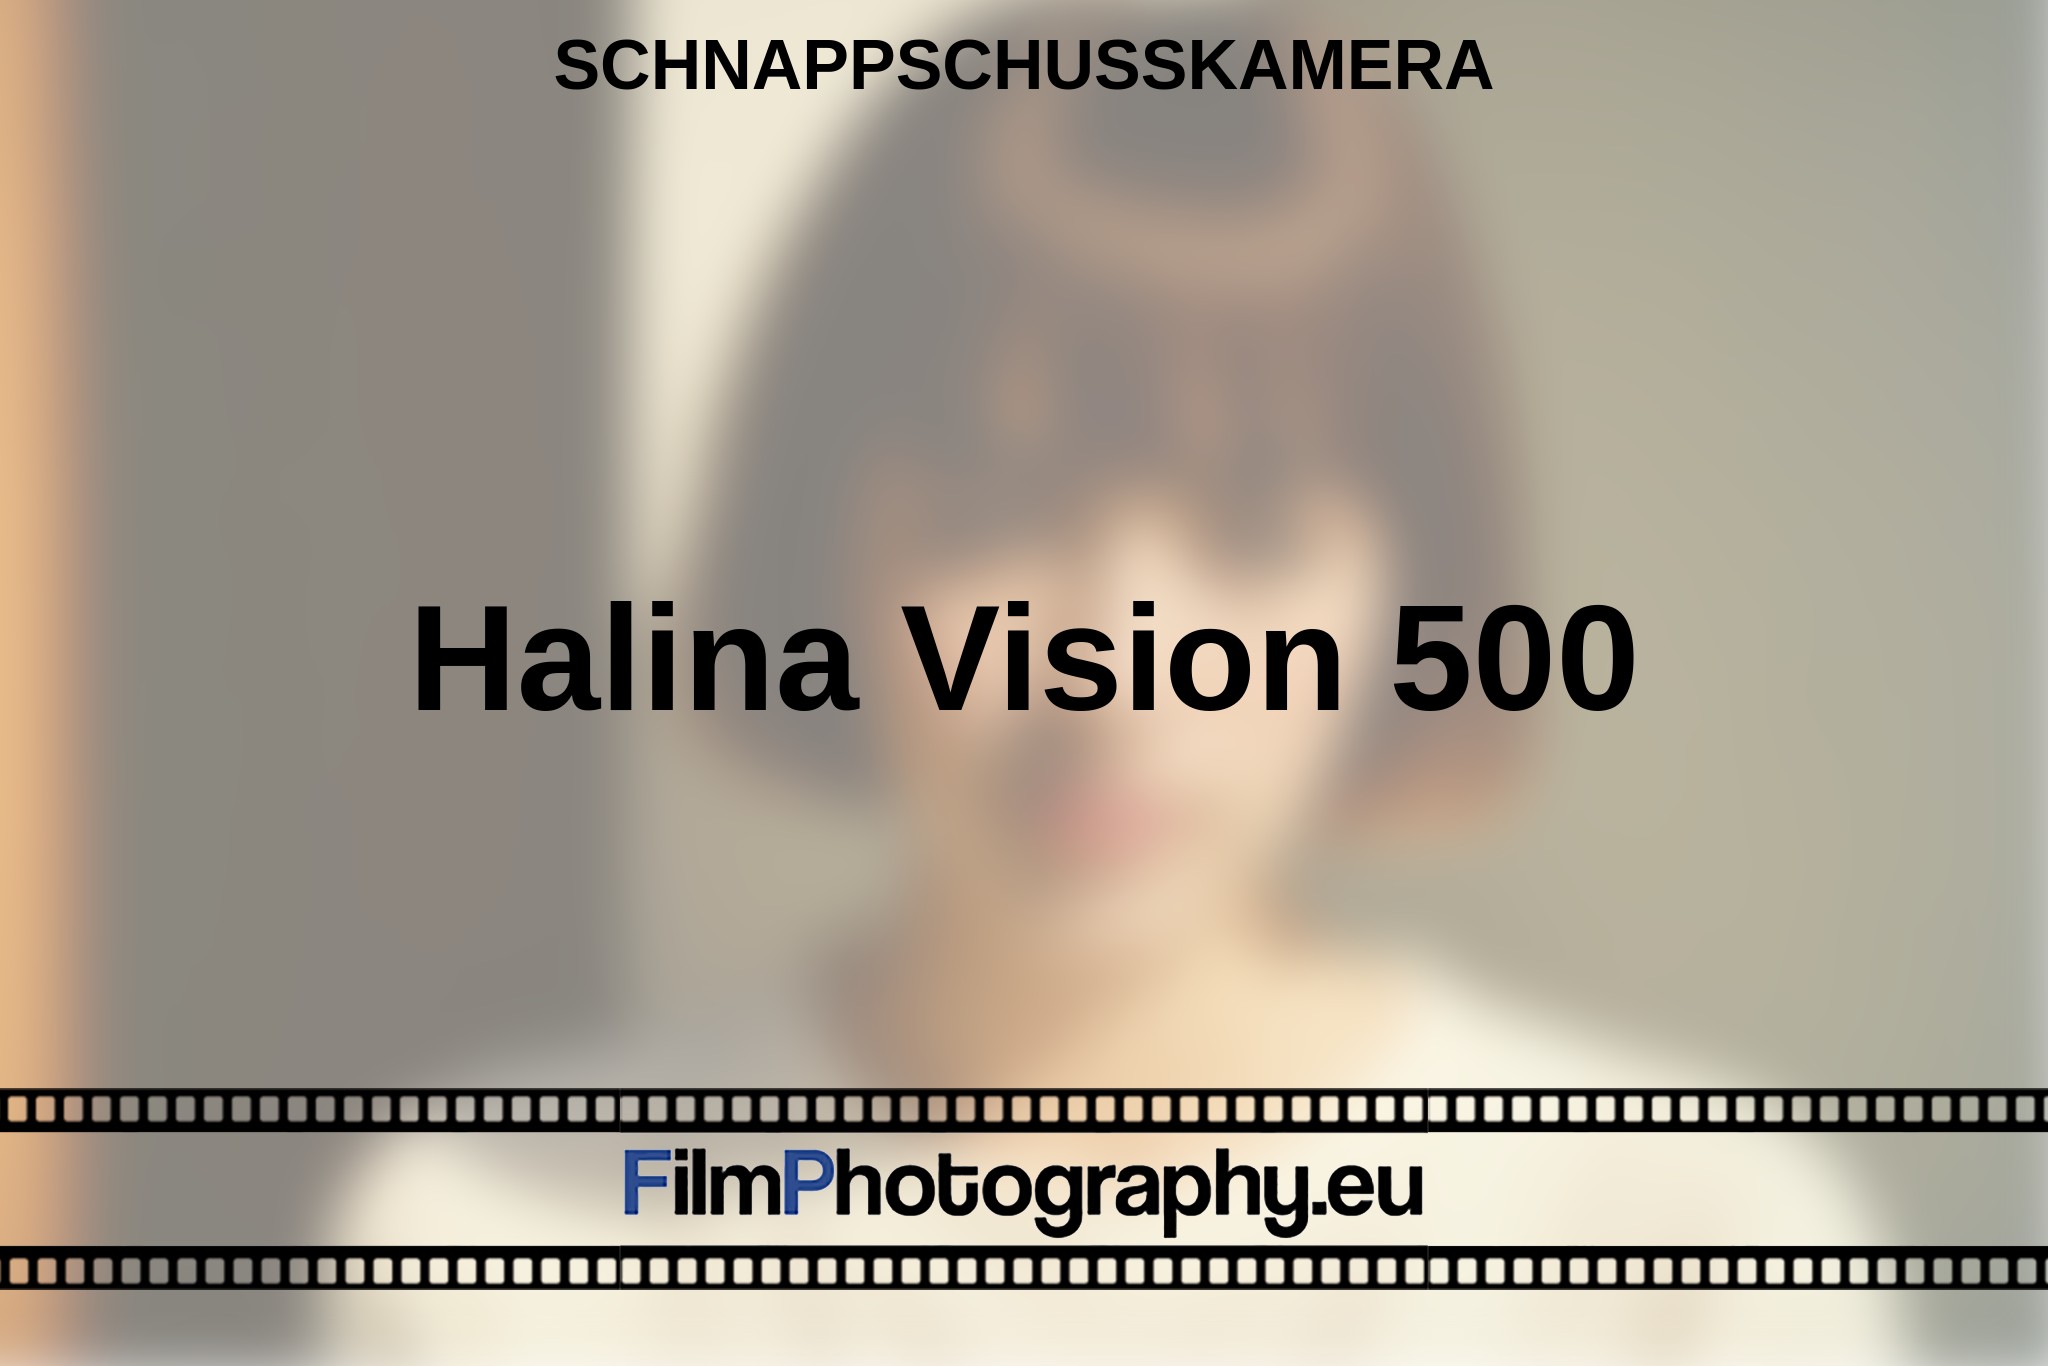 halina-vision-500-schnappschusskamera-bnv.jpg